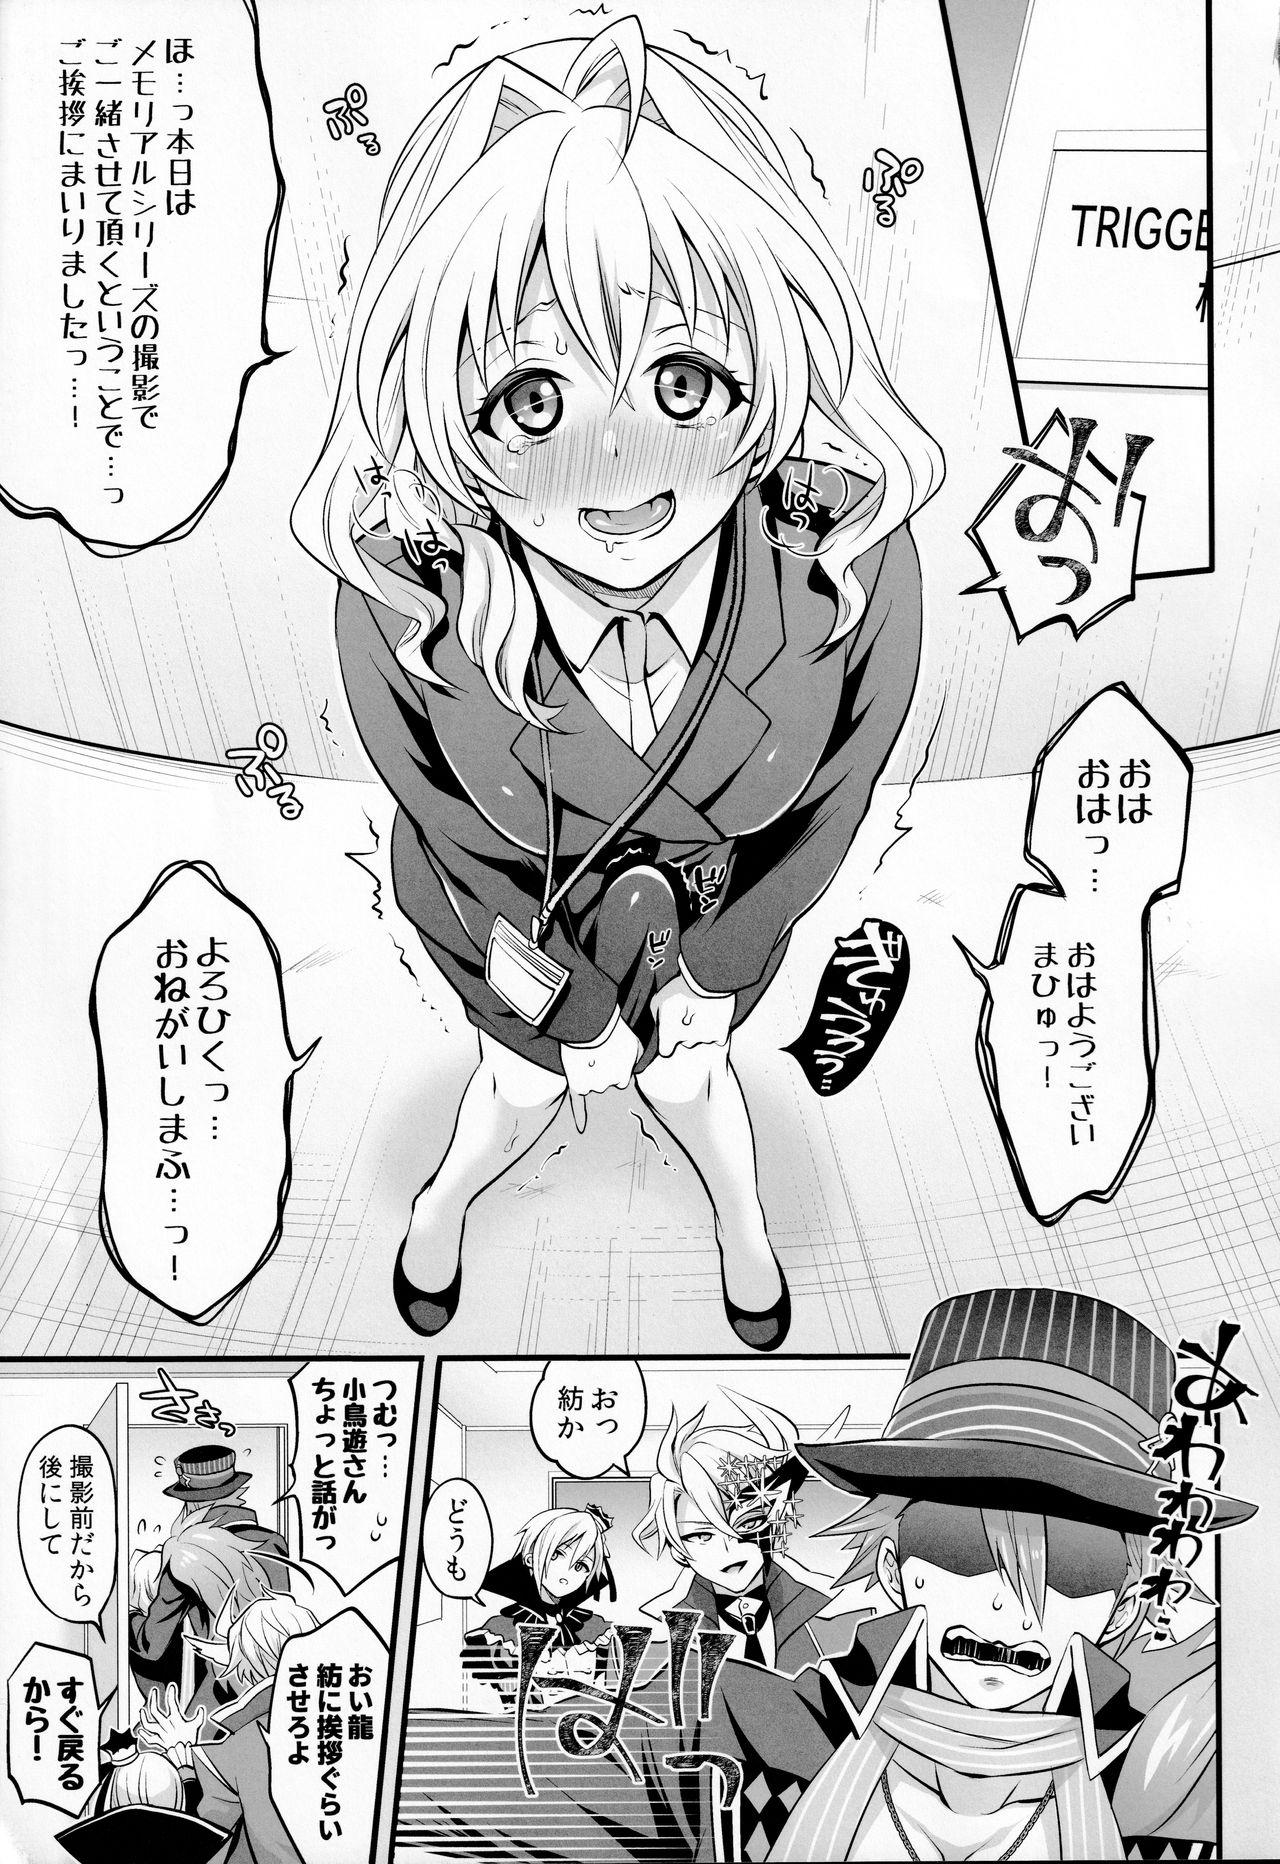 Self Watashi no Ochinchin ga Amaeta Gatterun desu! - Idolish7 Safado - Page 3